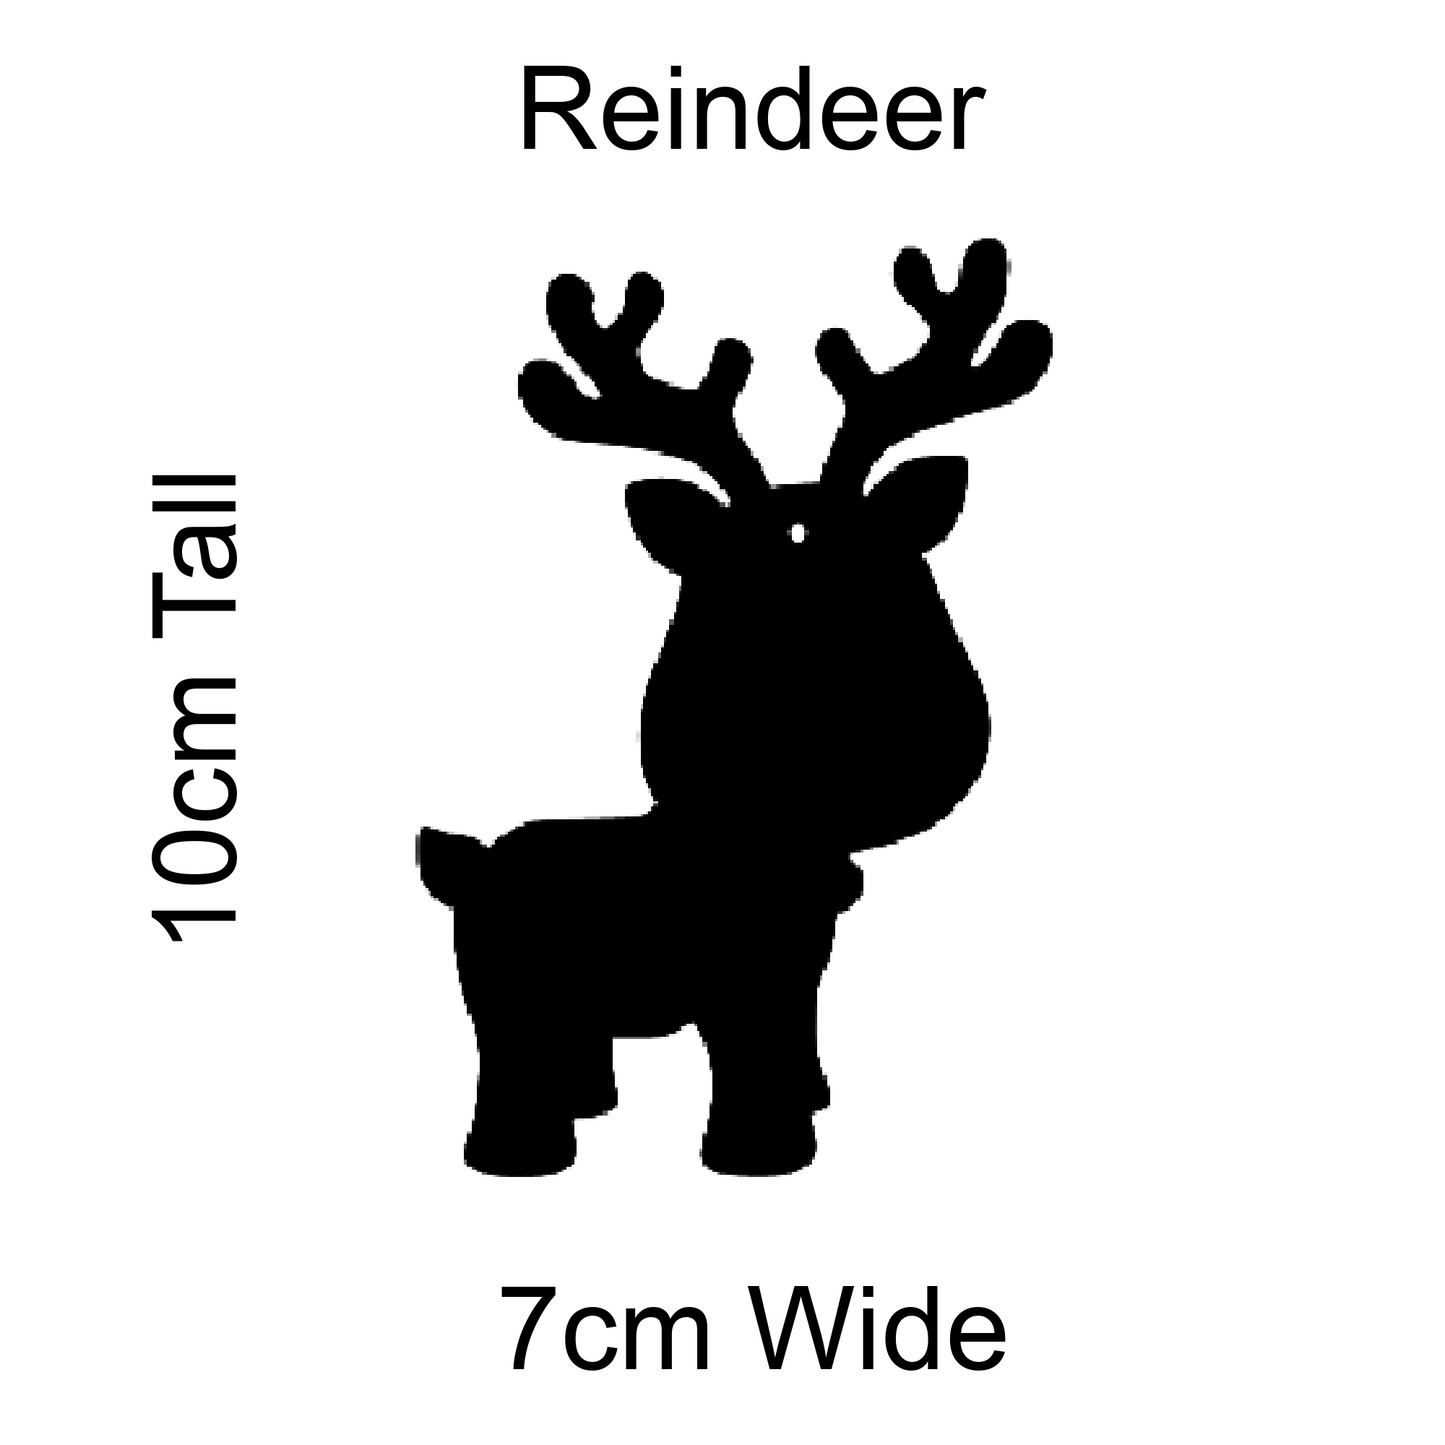 Wholesale Craft Blanks - Christmas Reindeer